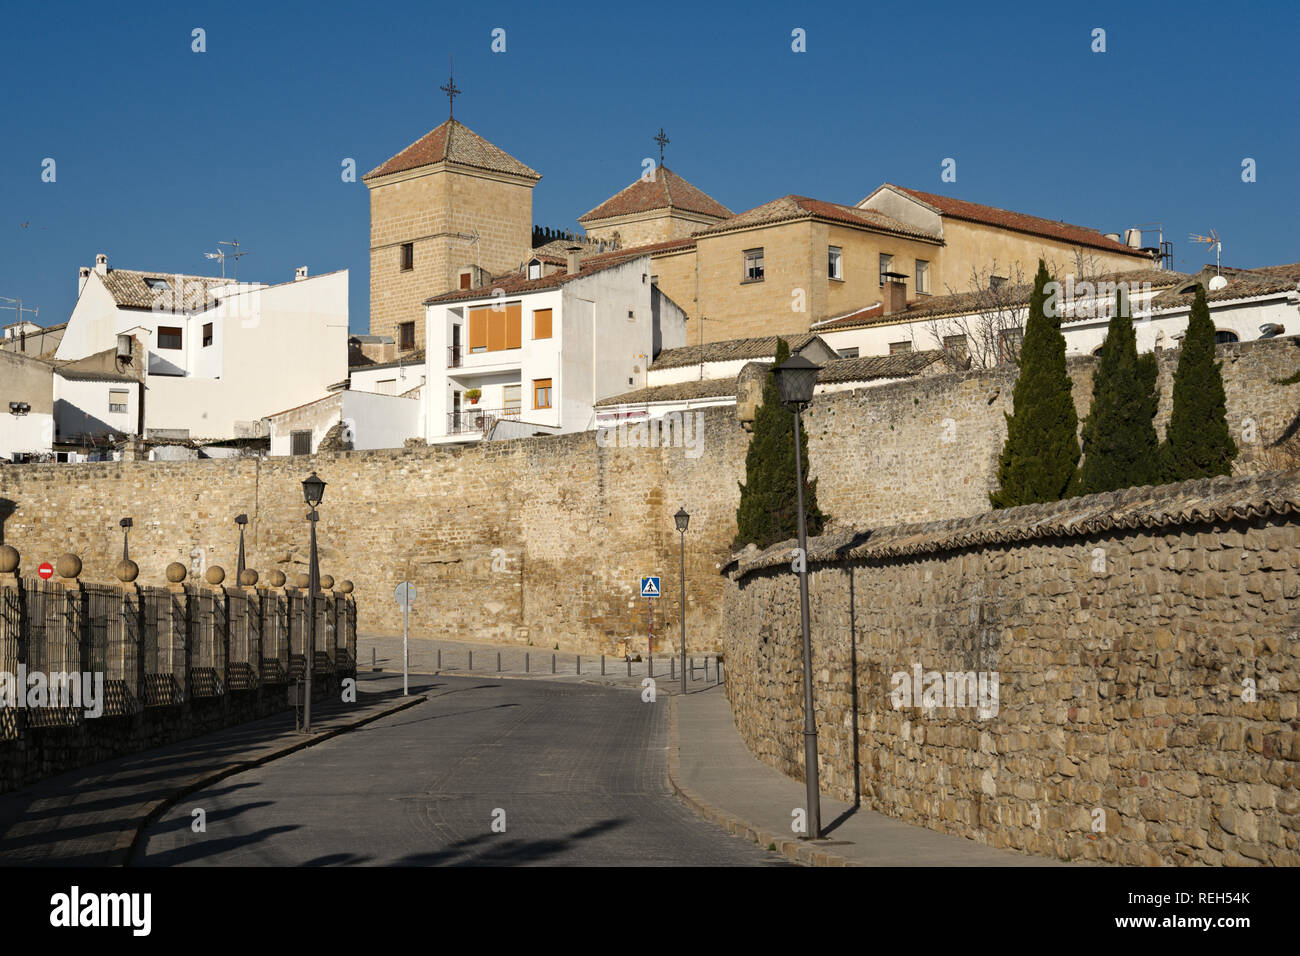 A Ubeda, Spagna - 7 Gennaio 2013: Cityscape con torri dominate della Casa de las Torres. Costruire intorno al 1520, questo monumento nazionale è attualmente la testa Foto Stock